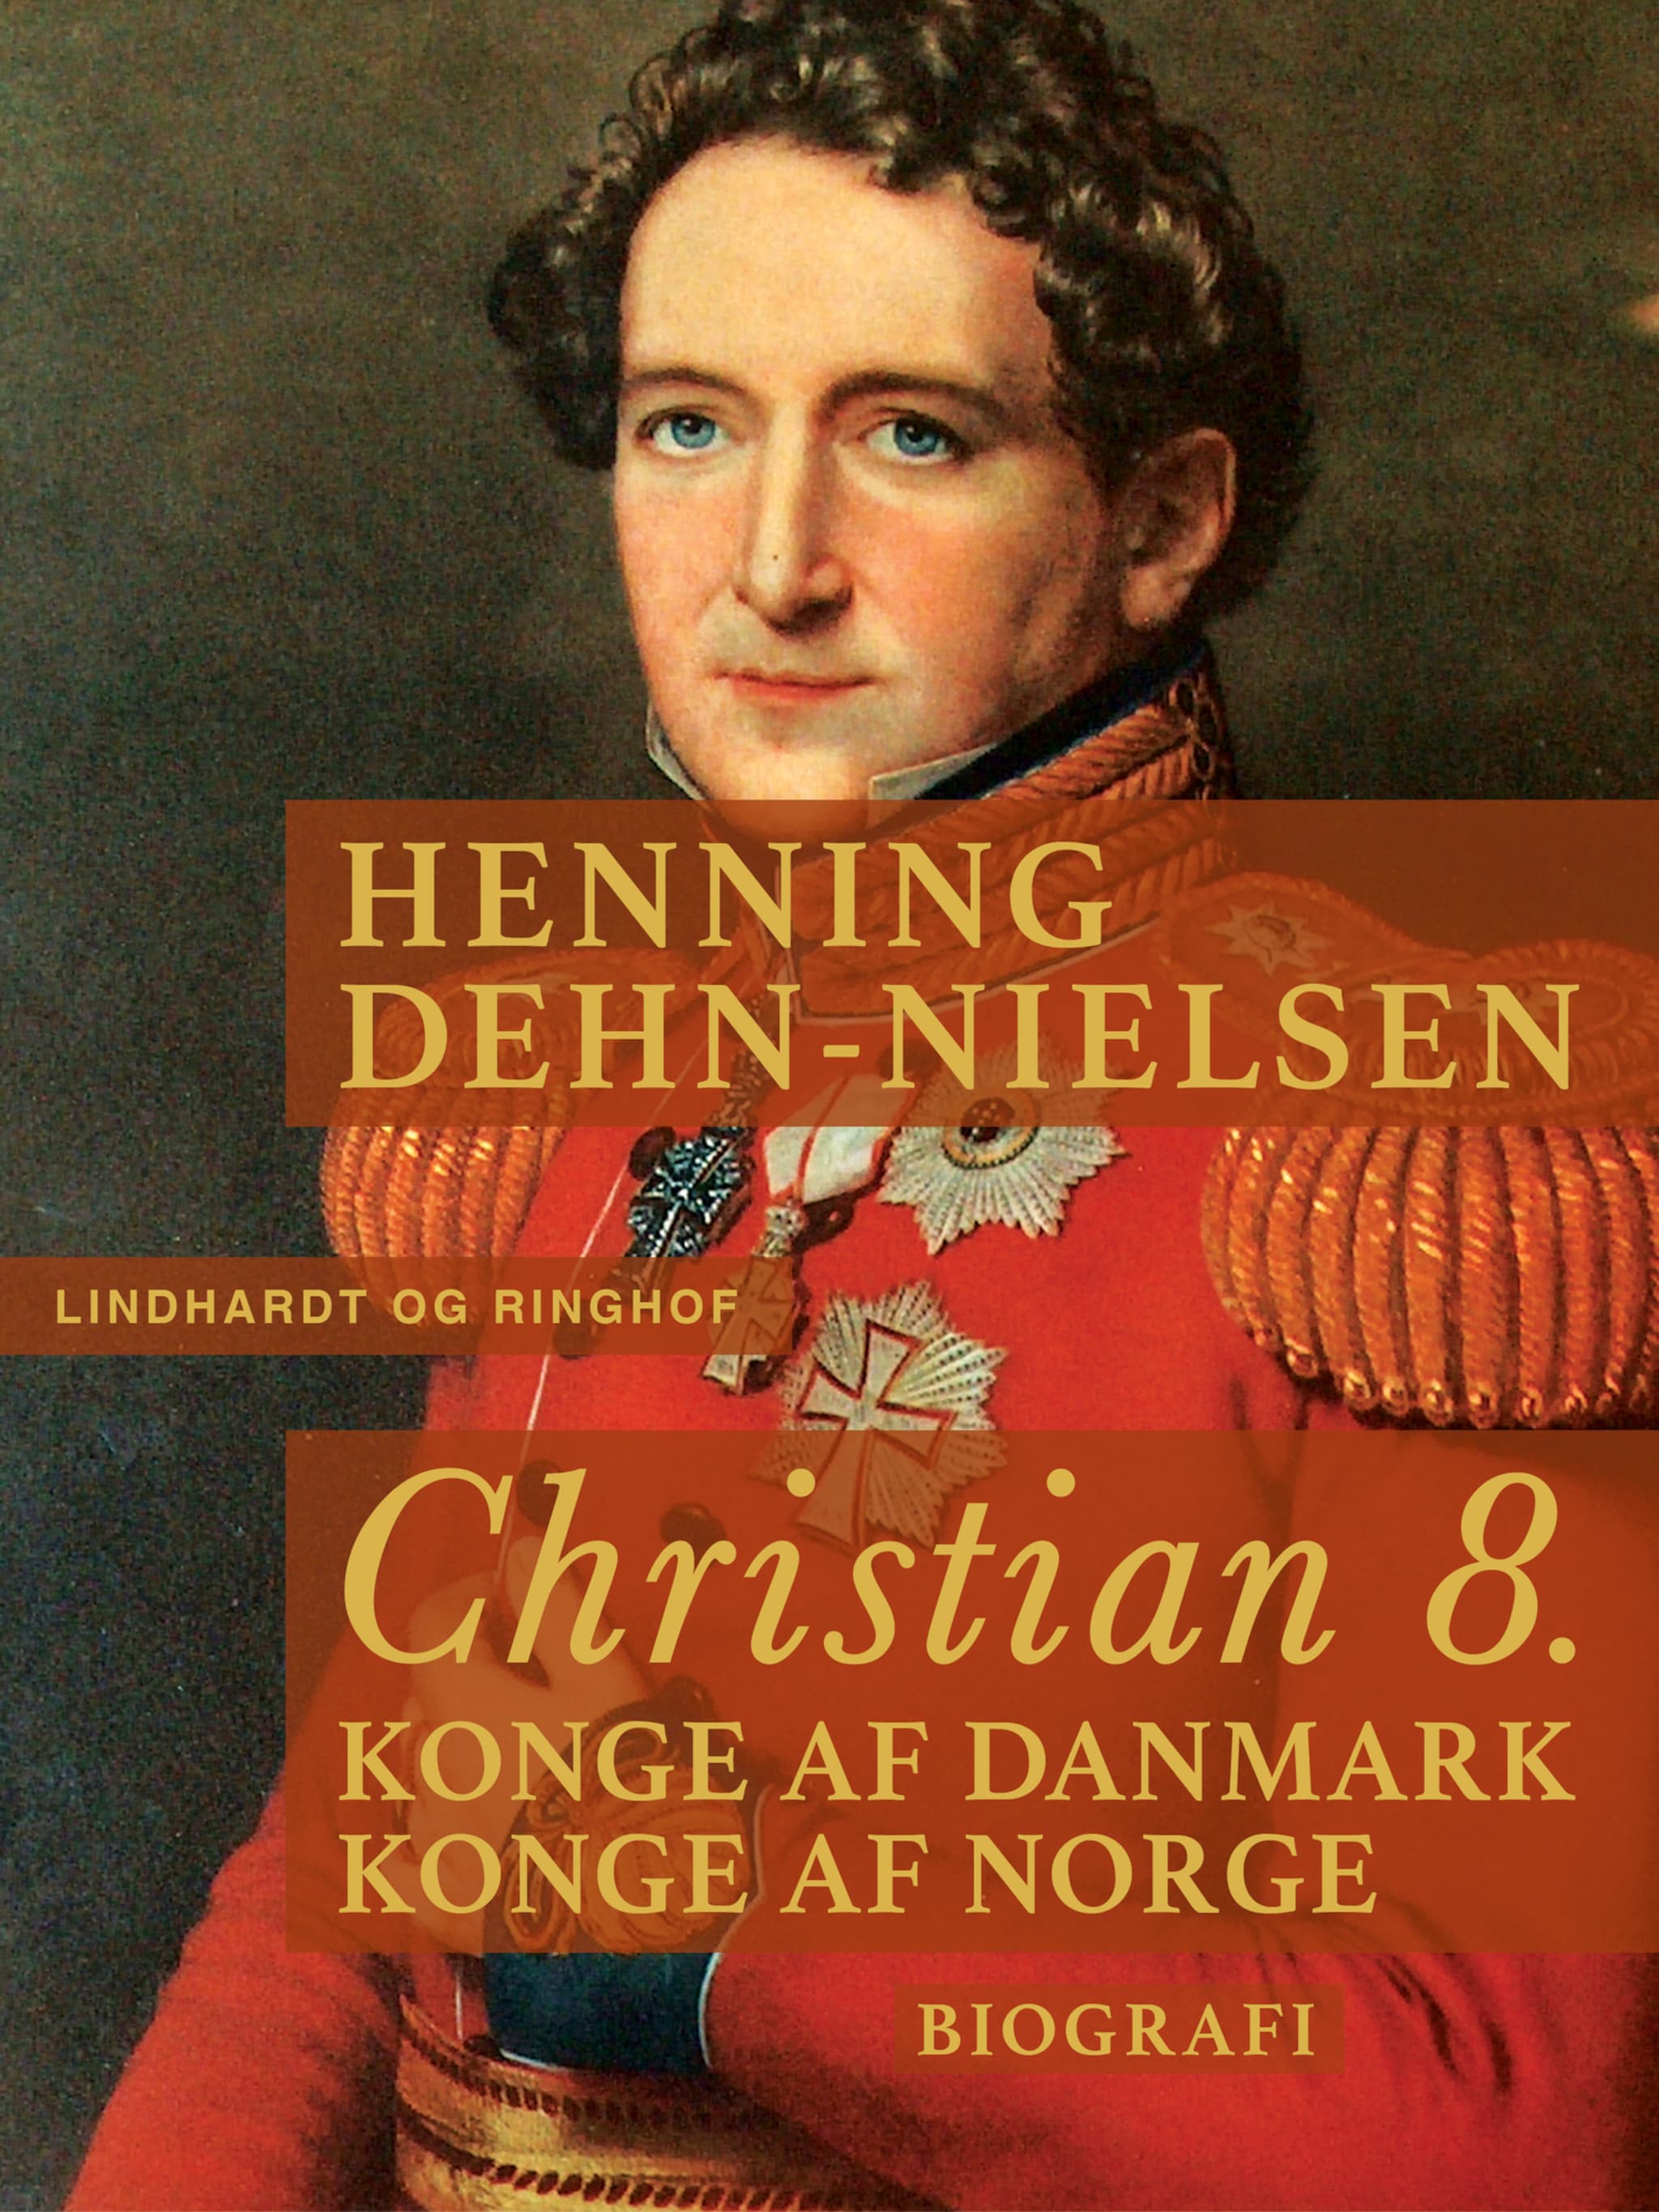 Christian 8. Konge af Danmark, konge af Norge ilmaiseksi